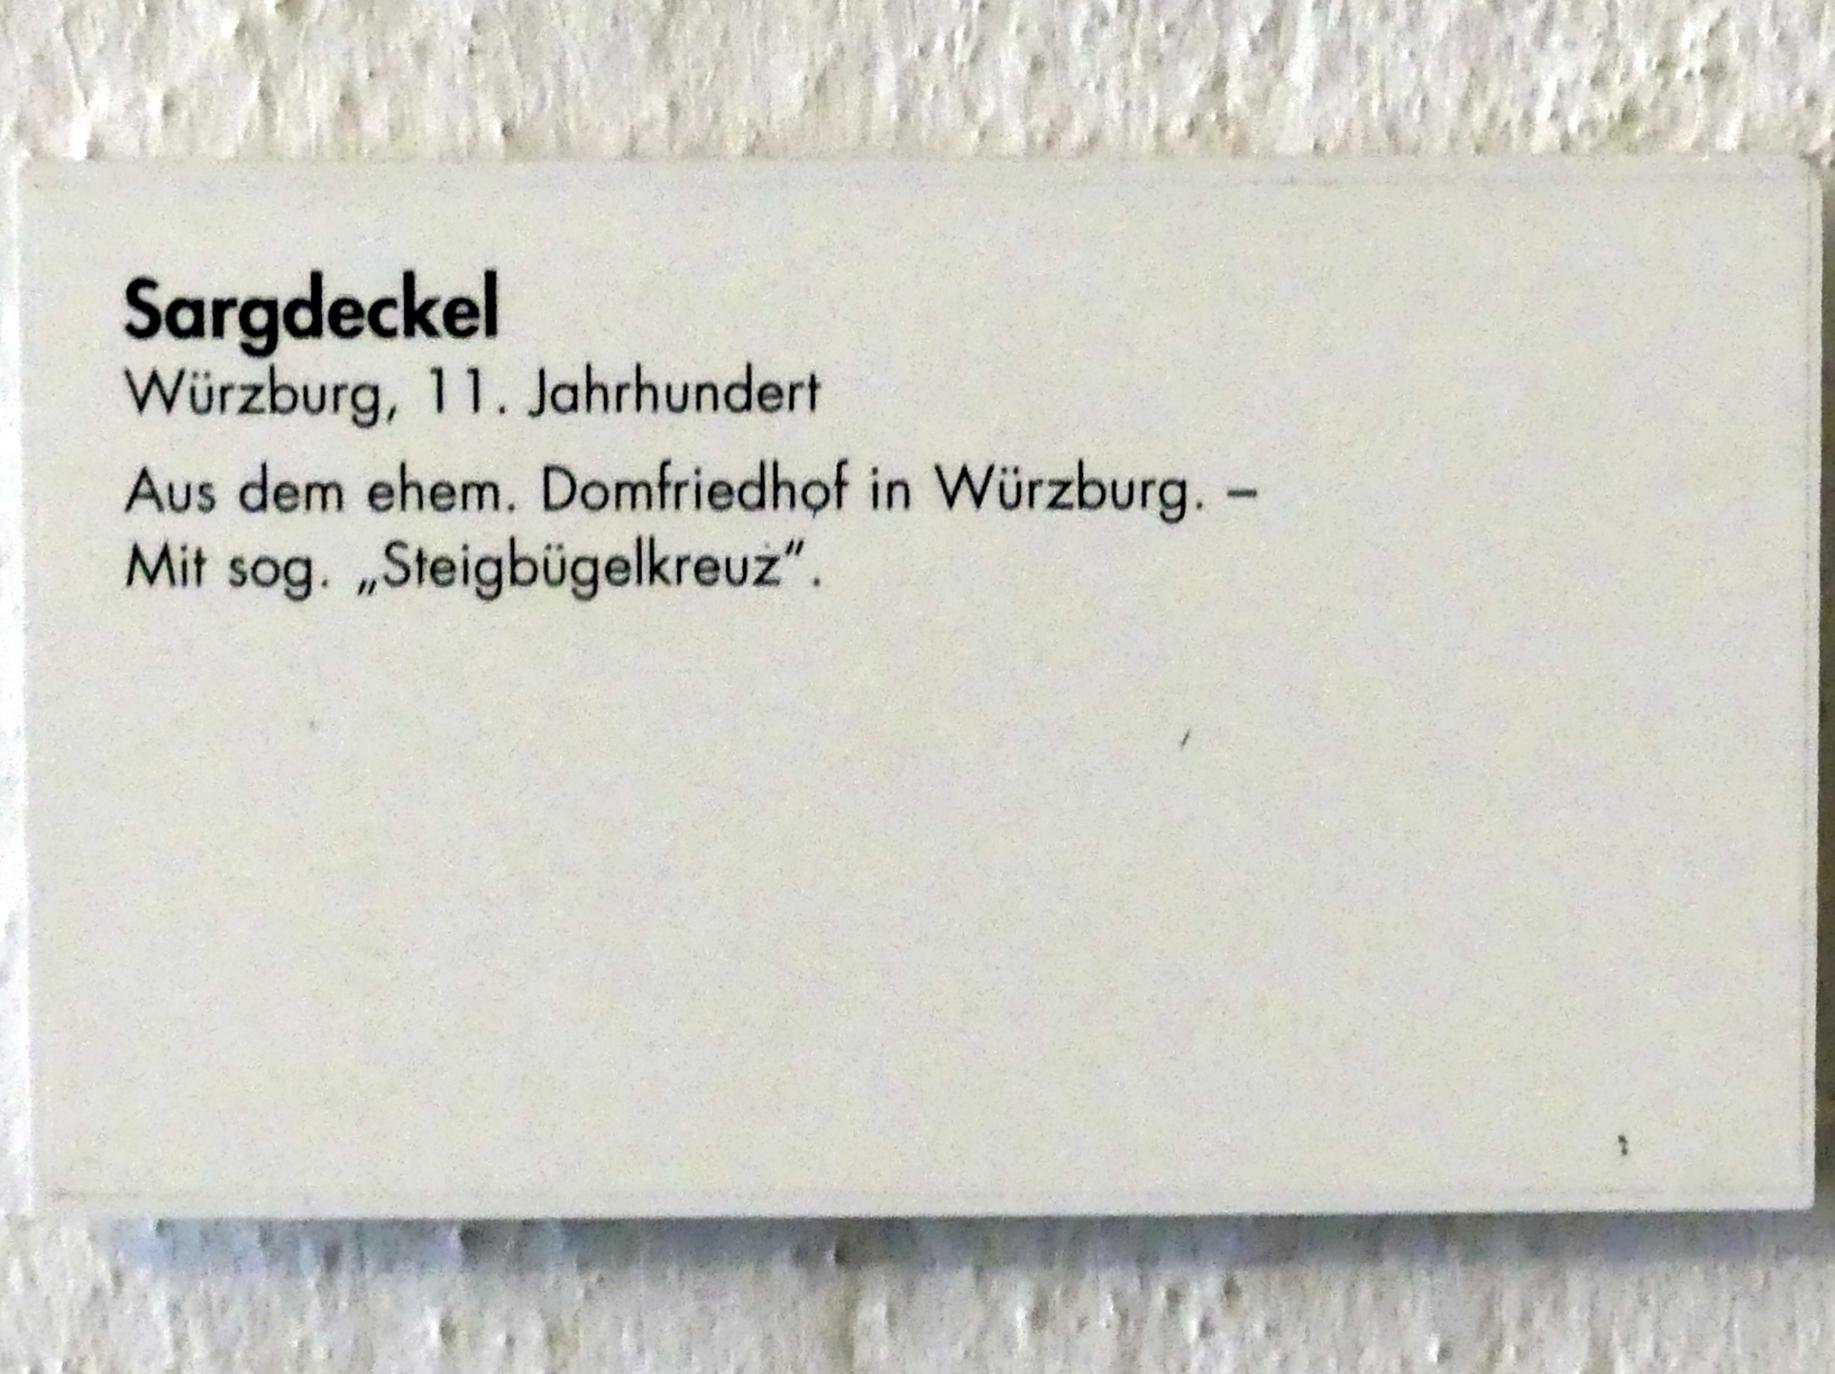 Sargdeckel, Würzburg, Dom St. Kilian, jetzt Würzburg, Museum für Franken (ehem. Mainfränkisches Museum), Romanischer Raum, 11. Jhd., Bild 2/2